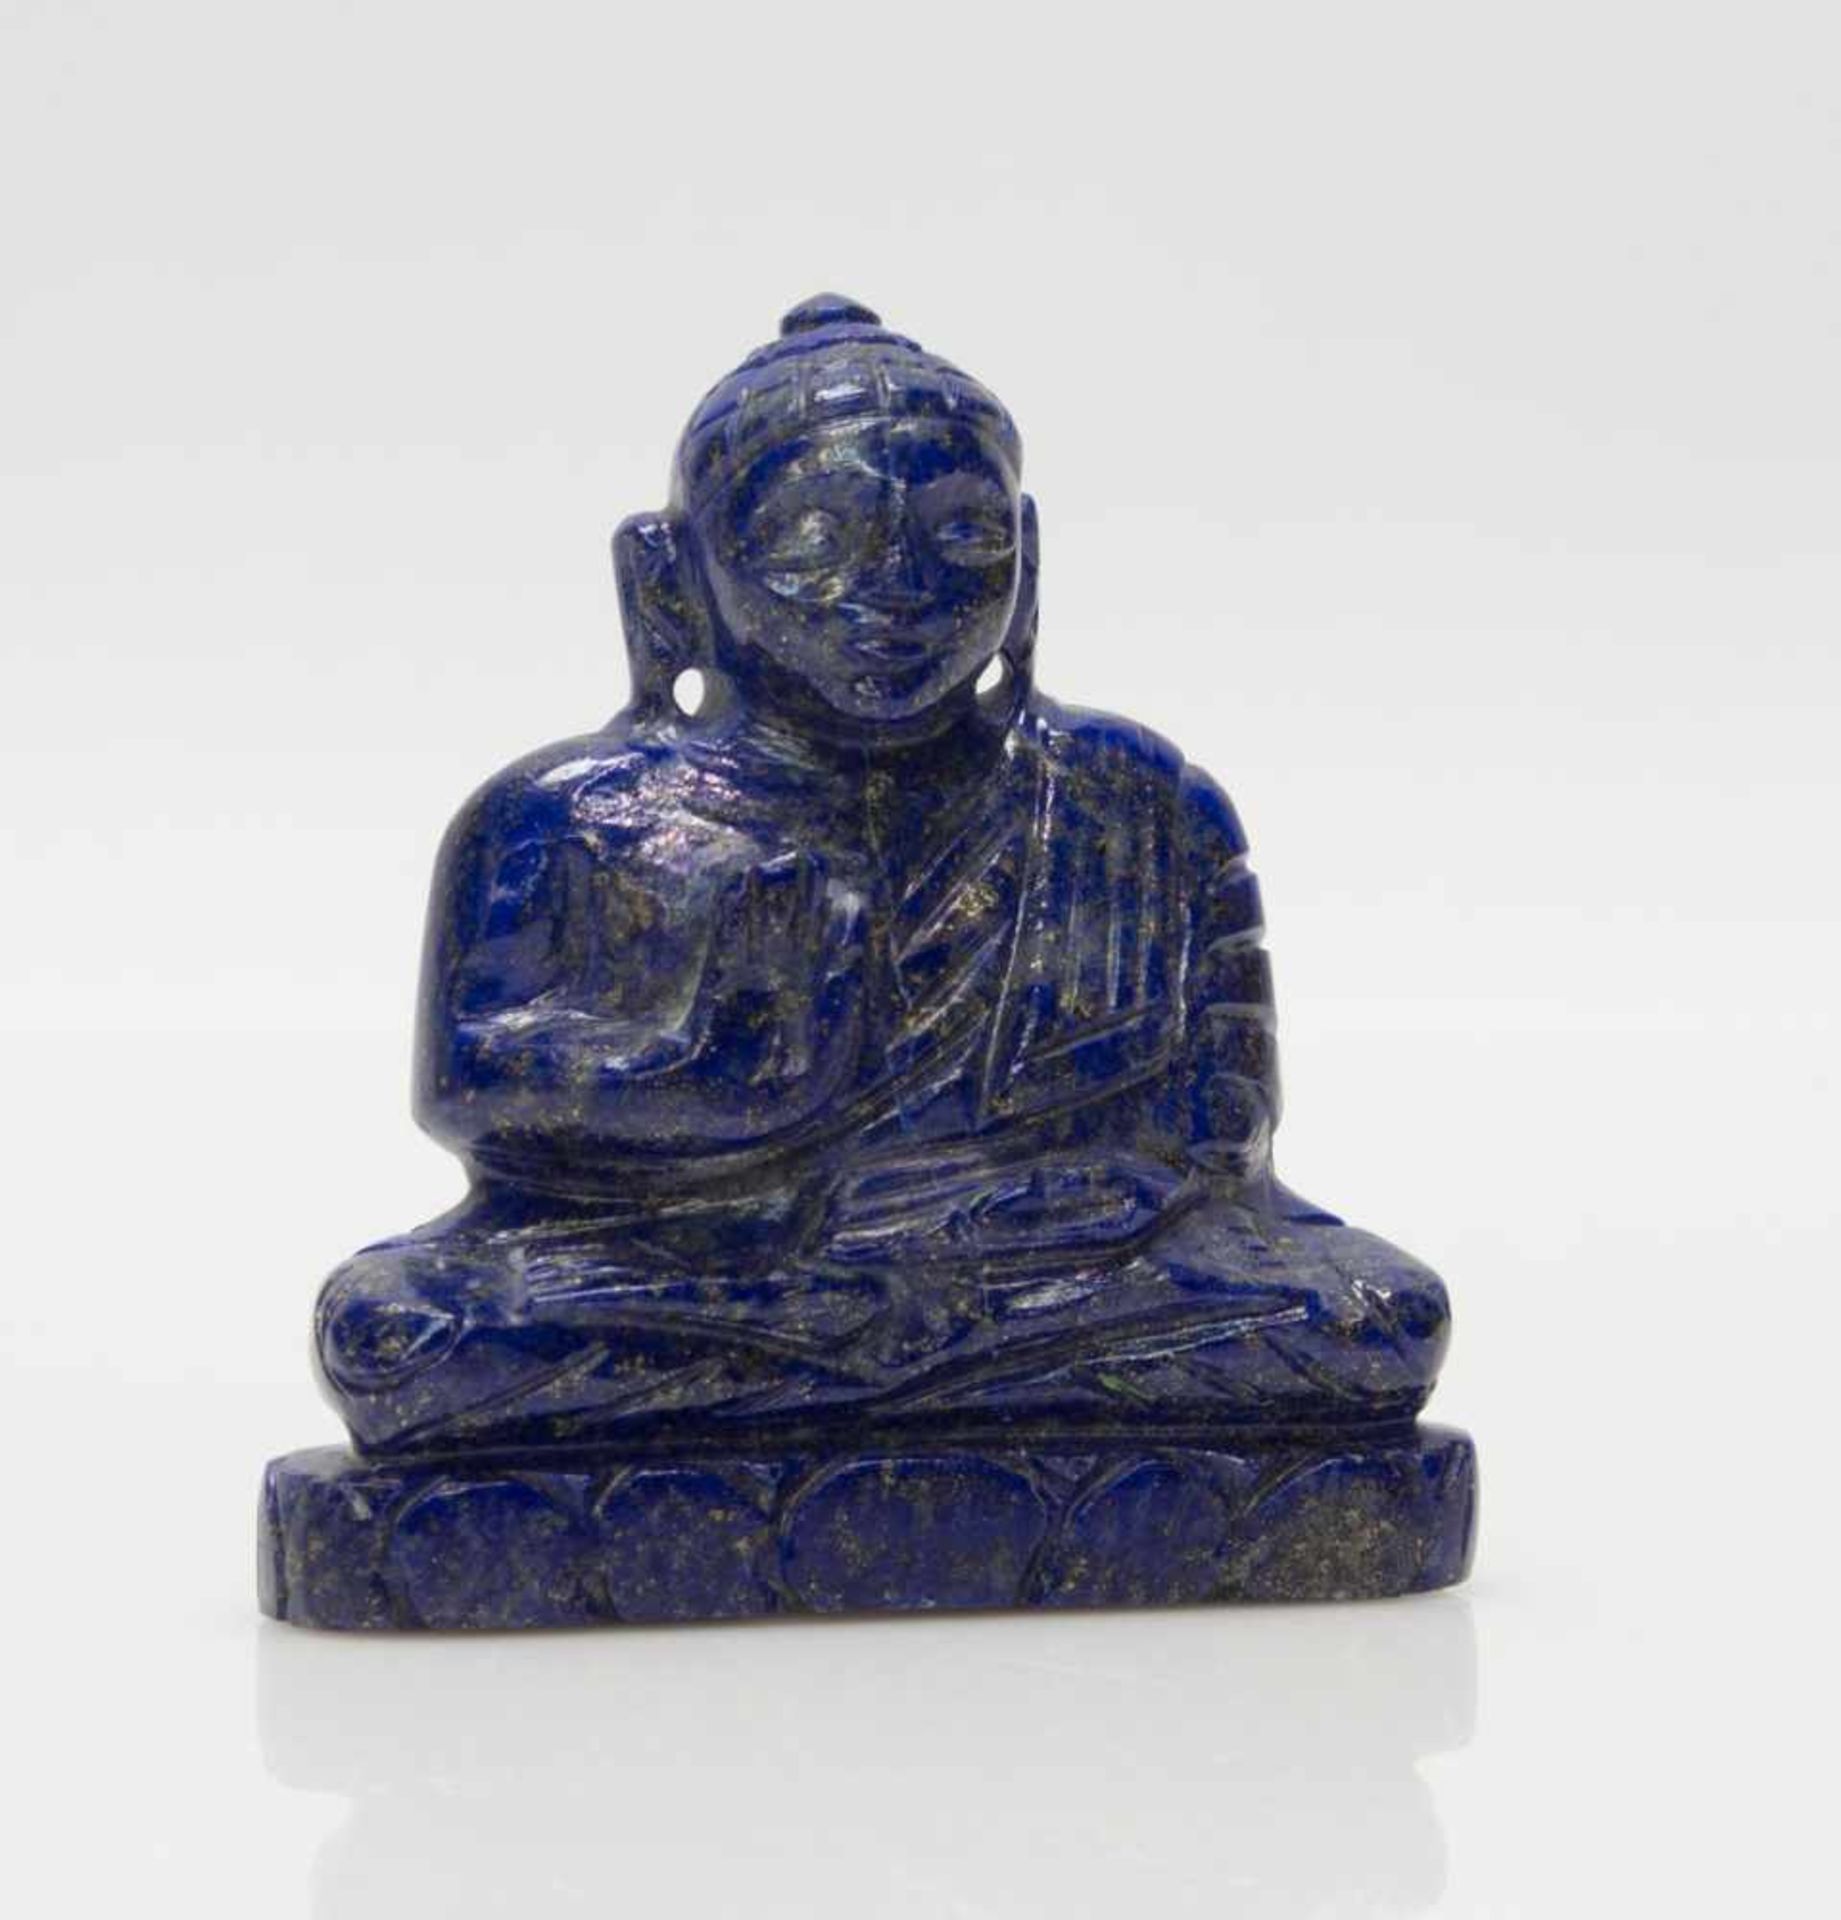 Lapislazuli BuddhaIndien, geschnittener Lapislazuli, Buddha in segnender Haltung, 6 x 6 cm